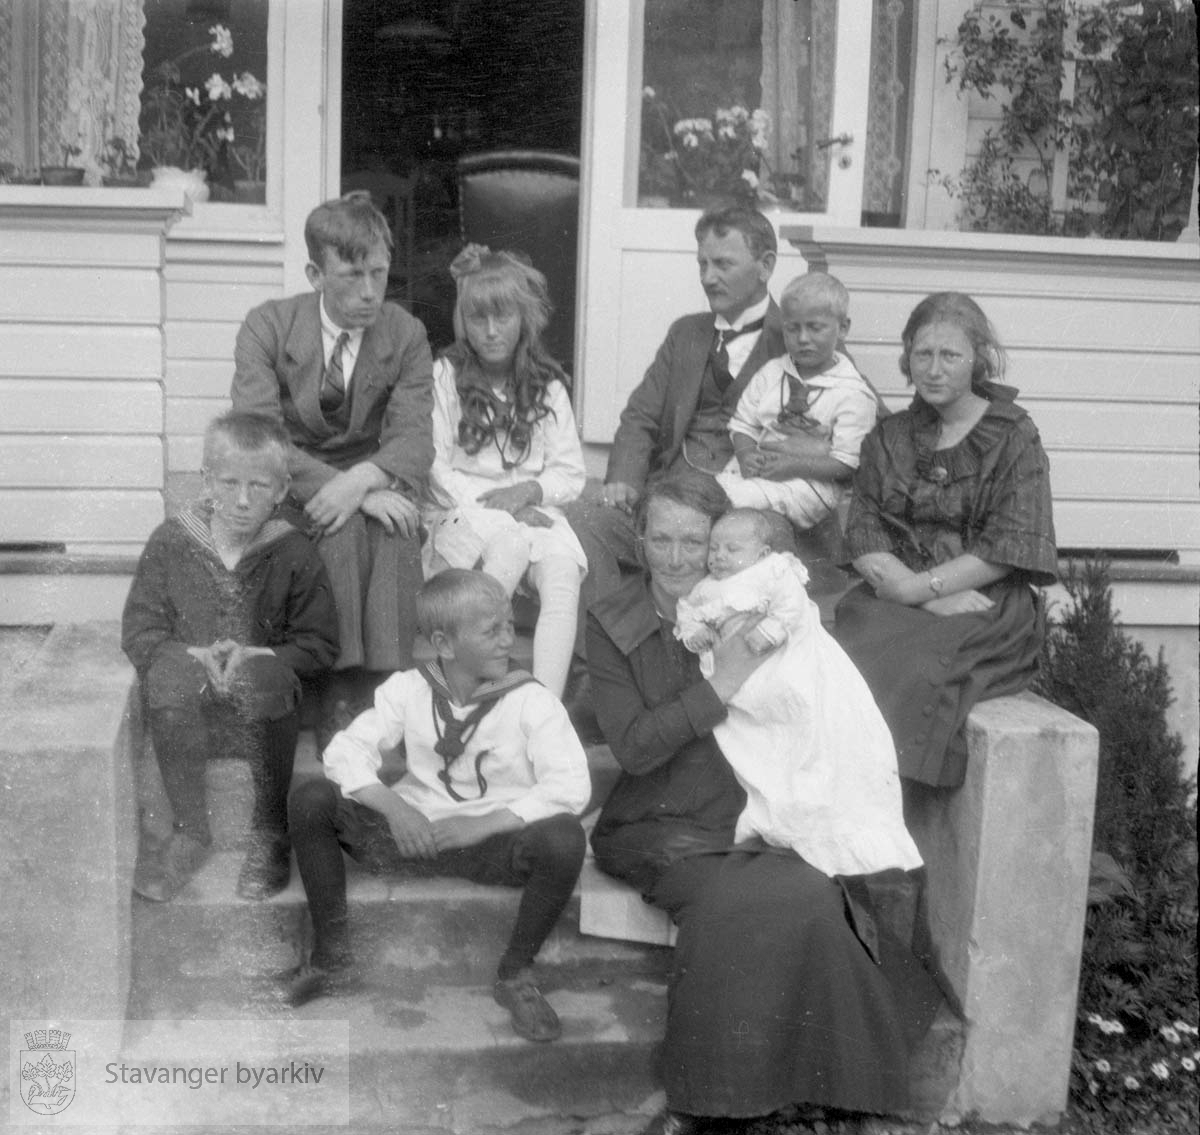 Familie på trapp foran hus